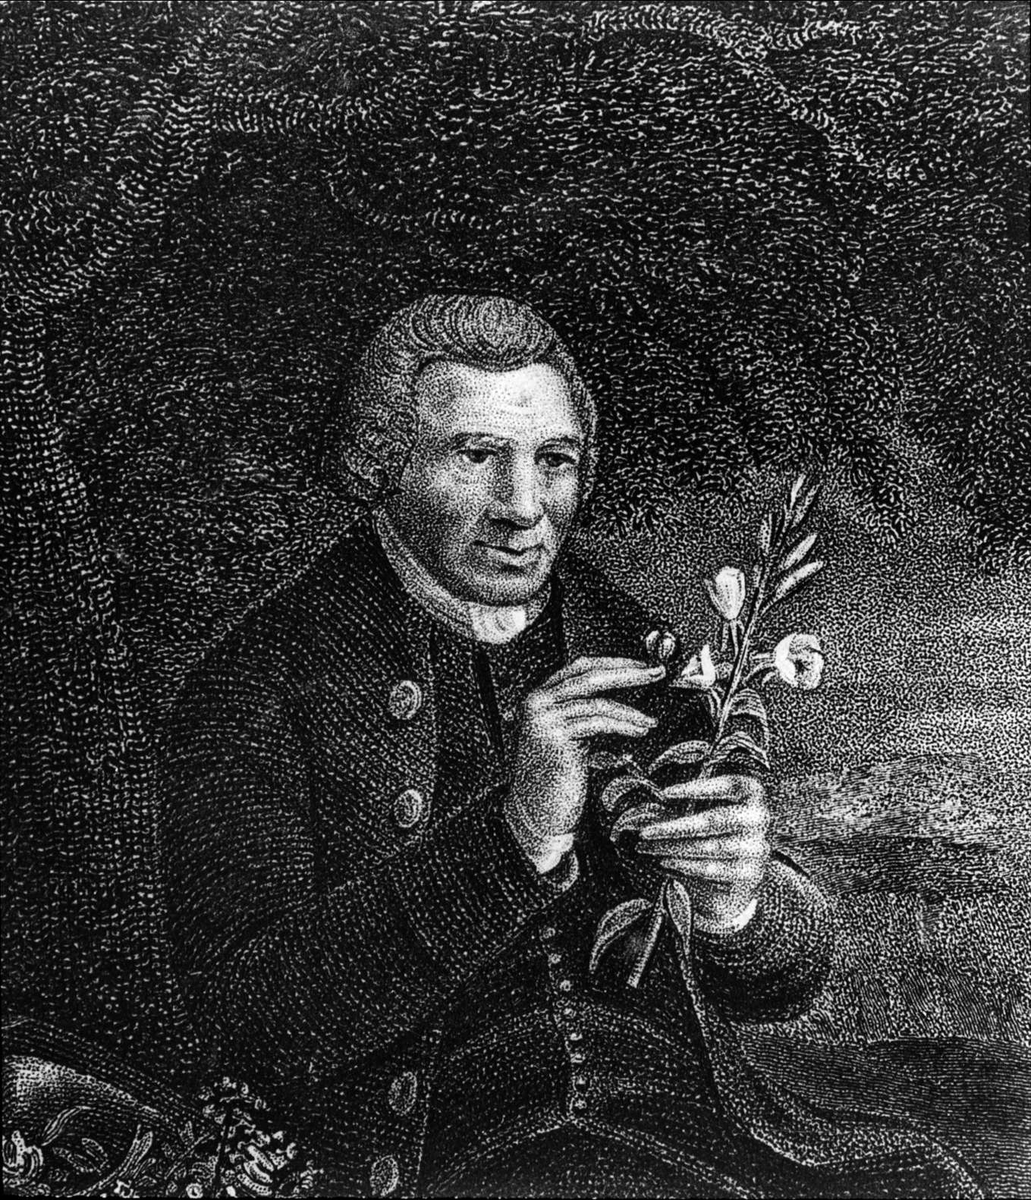 Porträtt av en man som studerar en växt